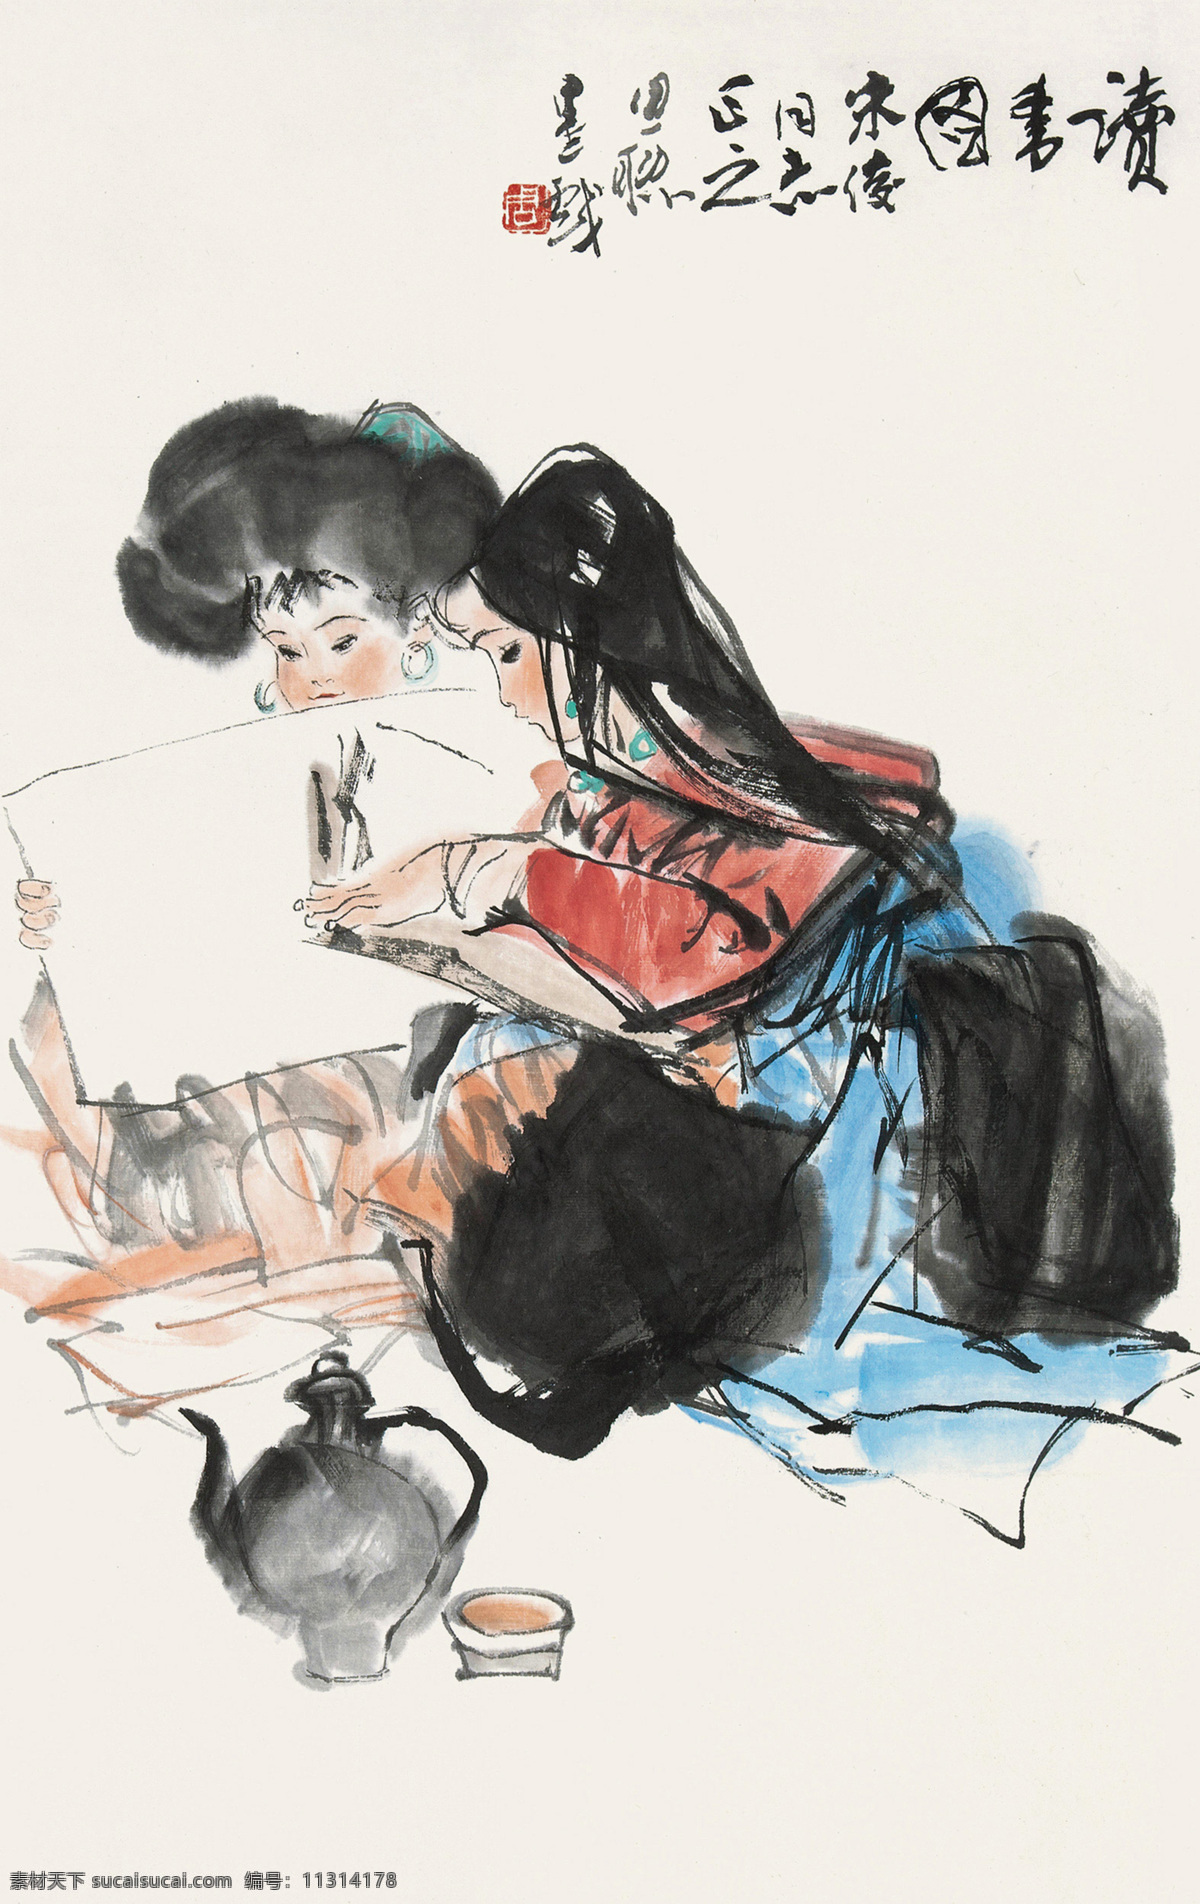 读书图 周思聪 国画 兄妹 水墨 青稞茶 女孩 藏族 藏族风情 少数民族 西藏 写意 中国画 绘画书法 文化艺术